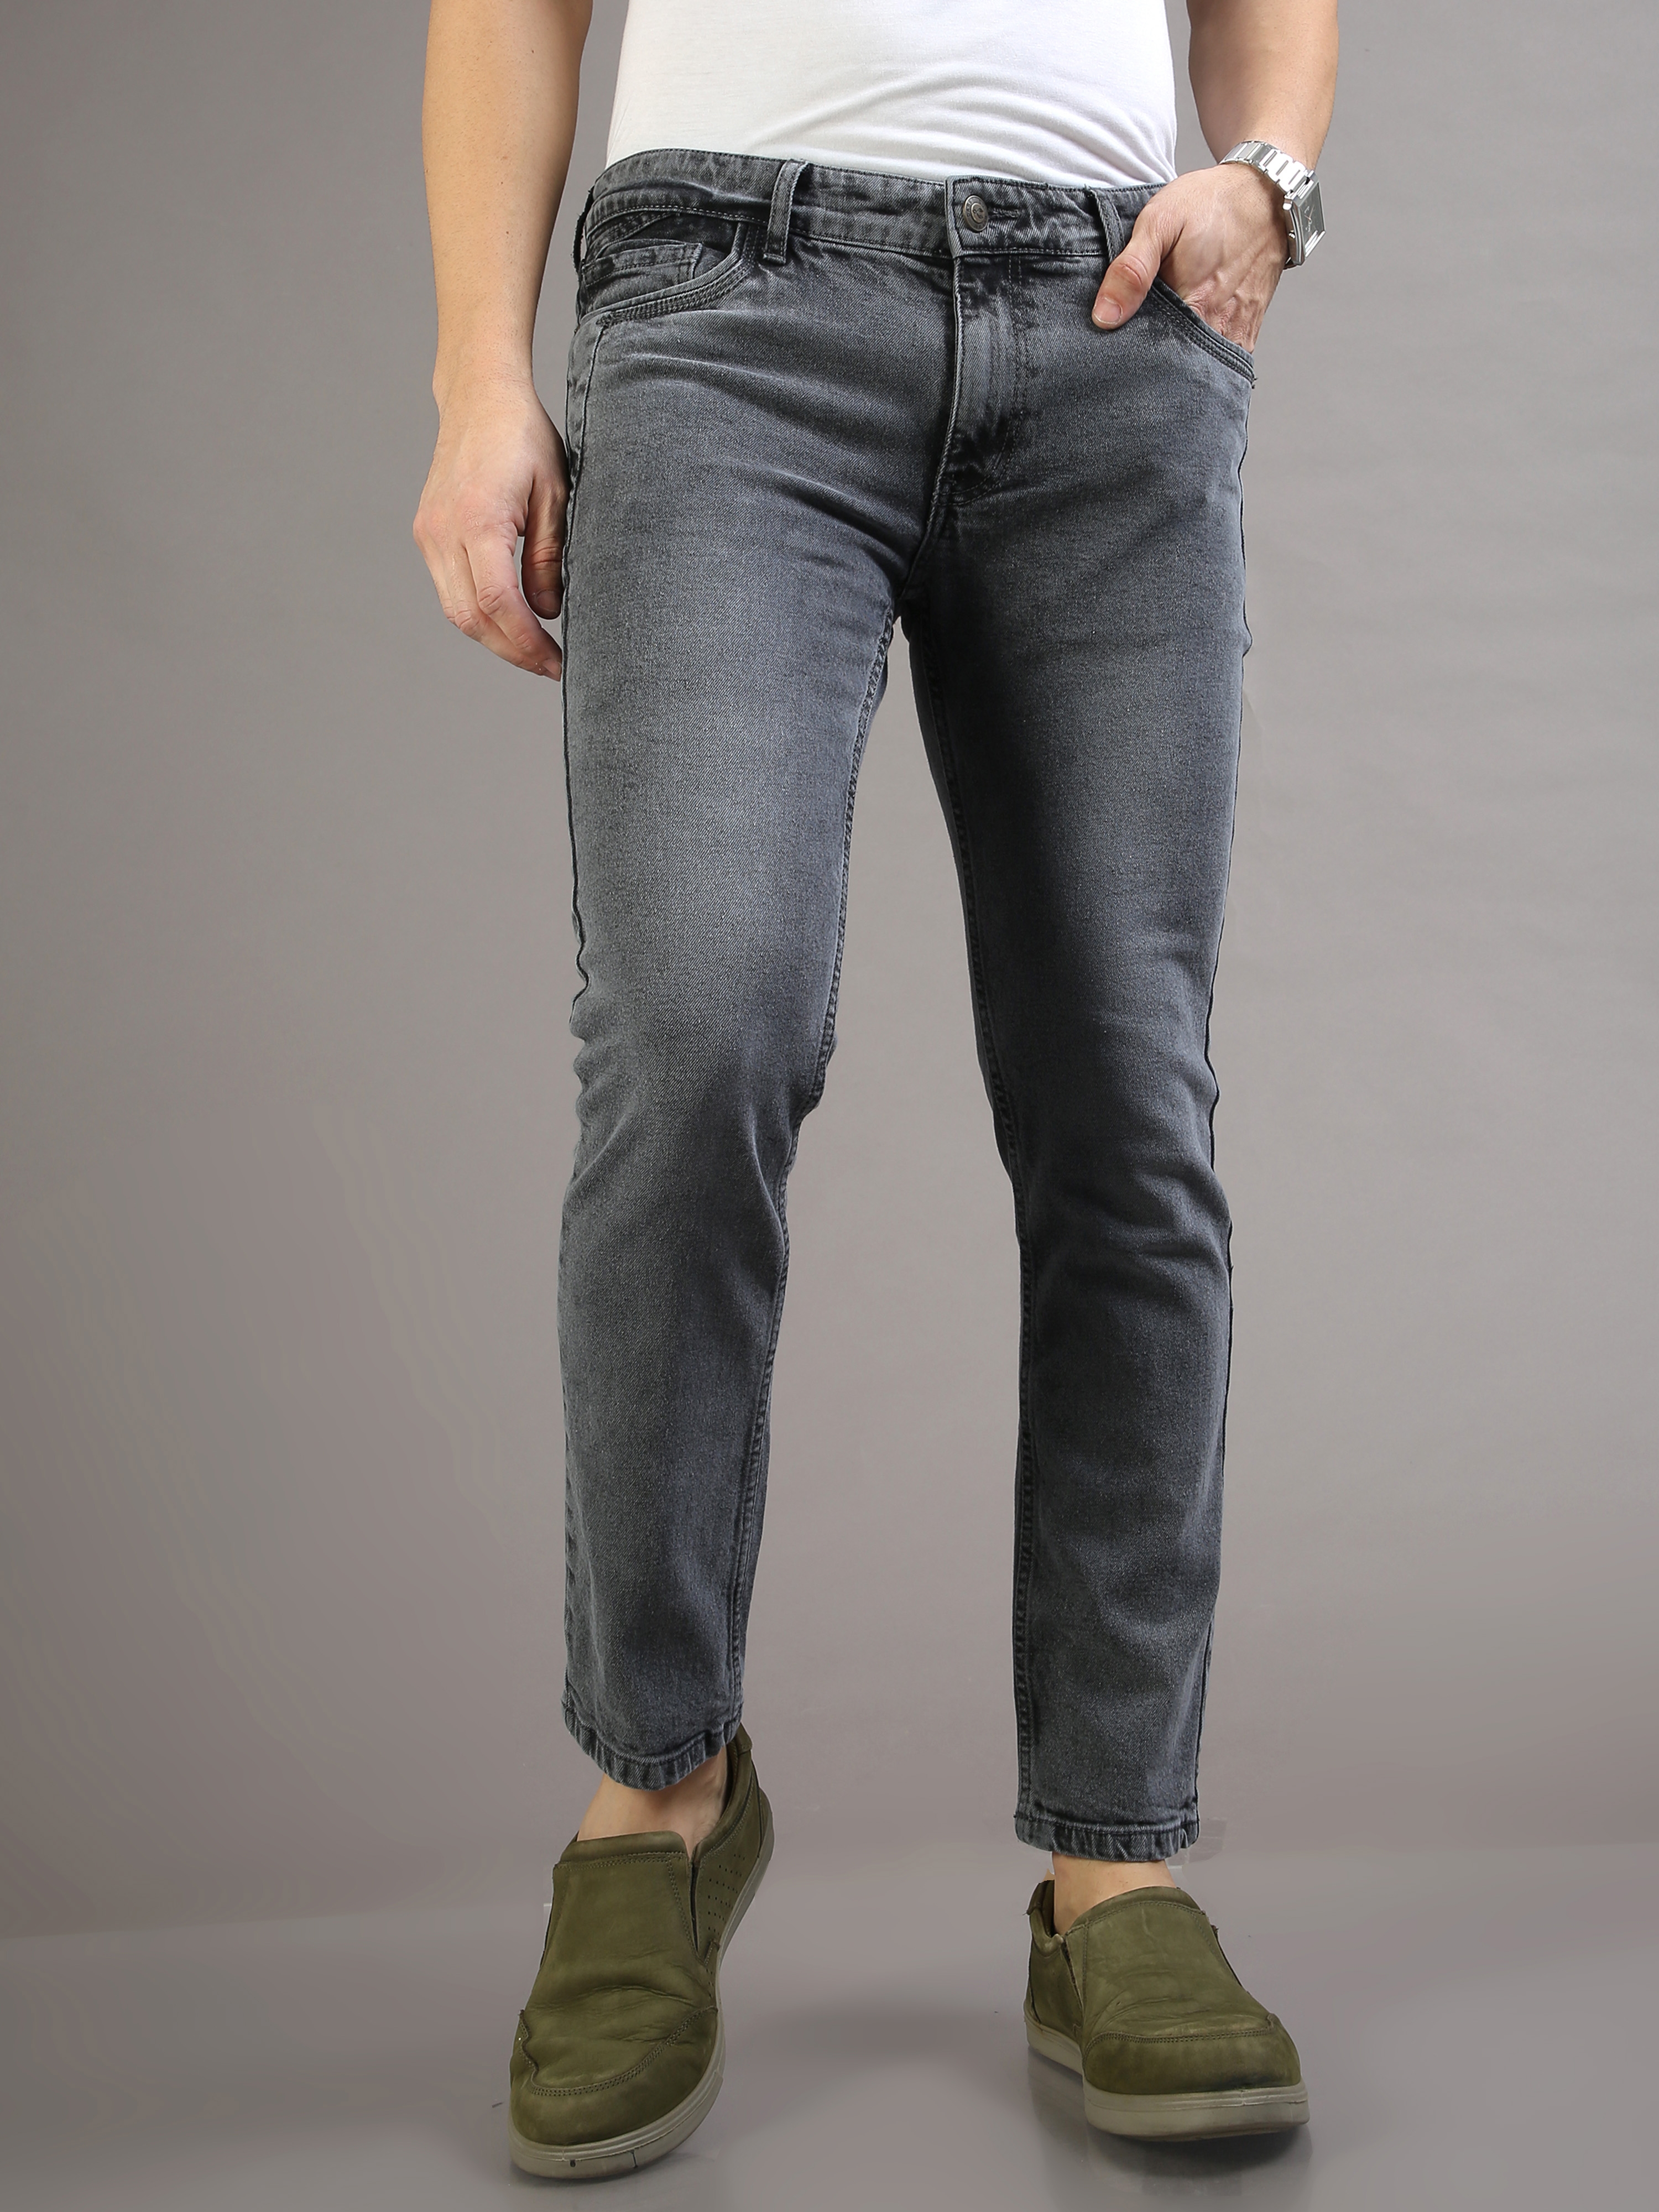 Men's Sleek Grey Slim Jeans